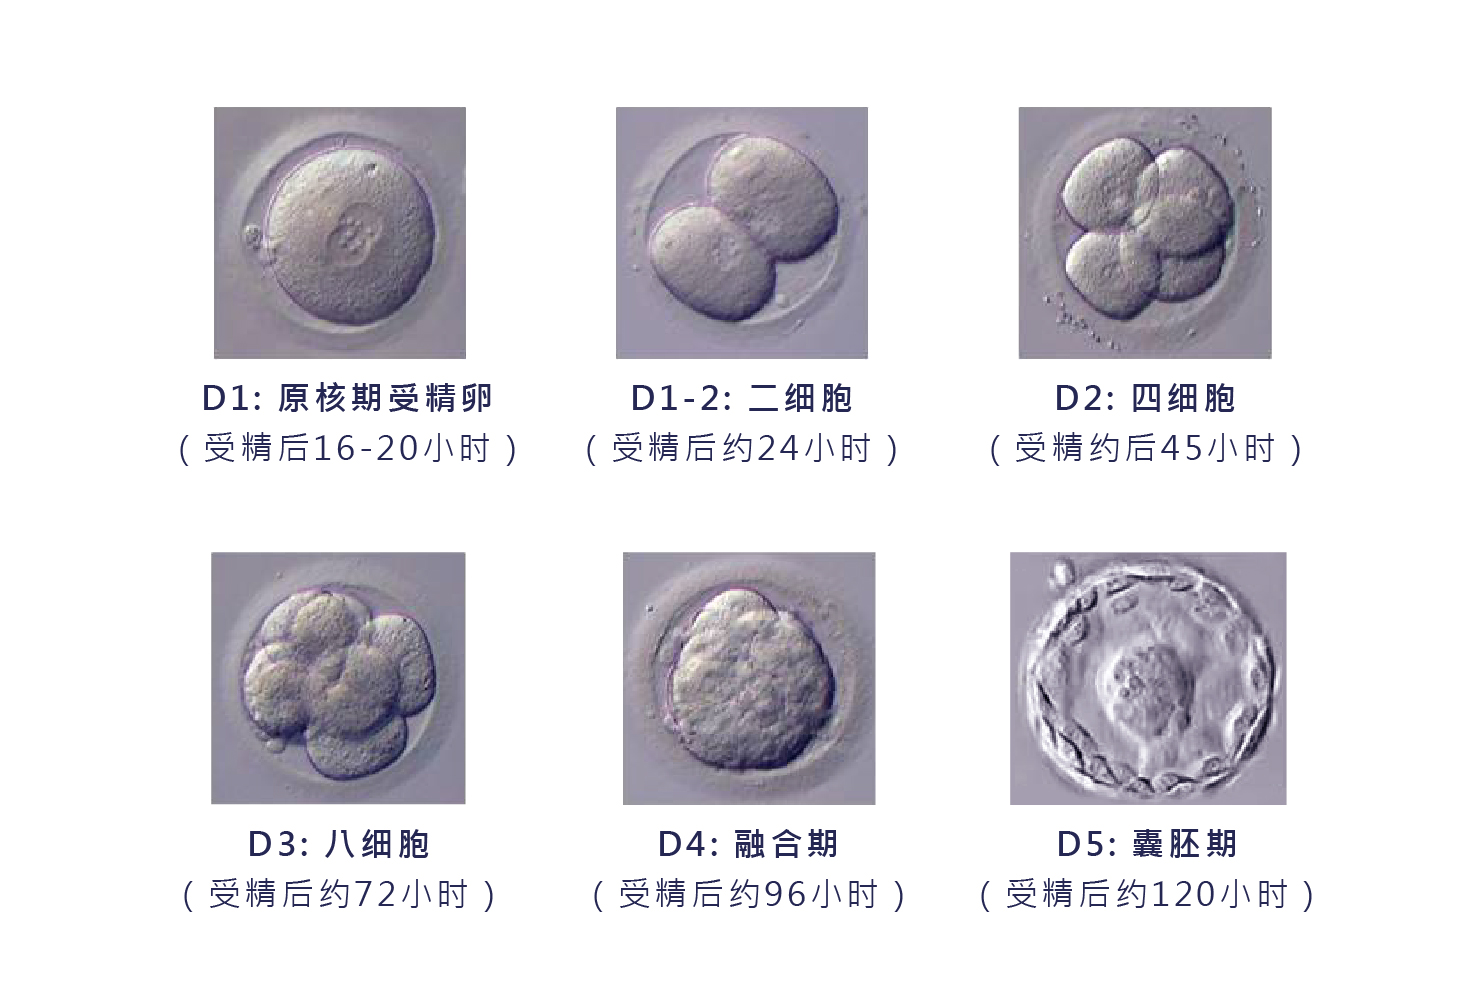 胚胎形态学分析